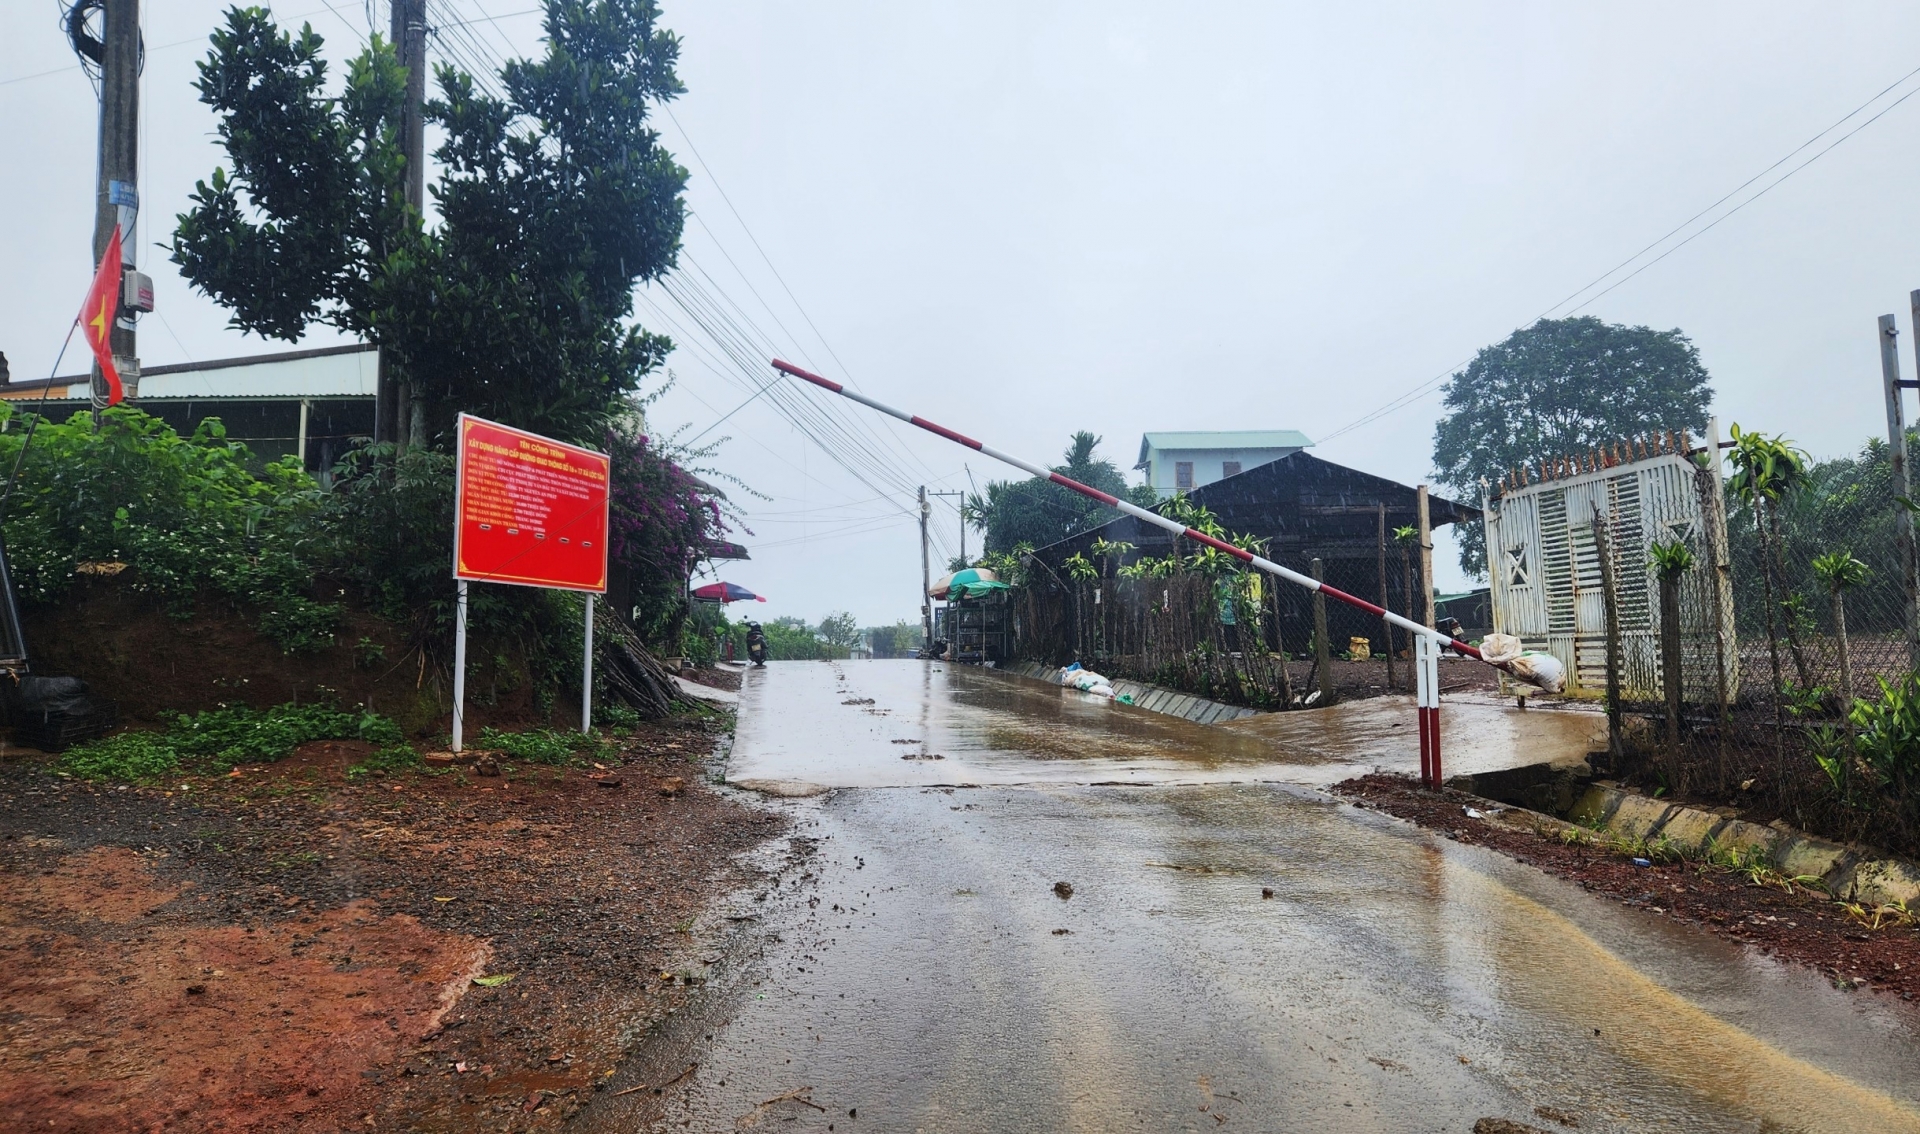 Barie mà UBND xã Lộc Tân dựng sai quy định tại tuyến đường số 16 khiến nhiều người dân bức xúc